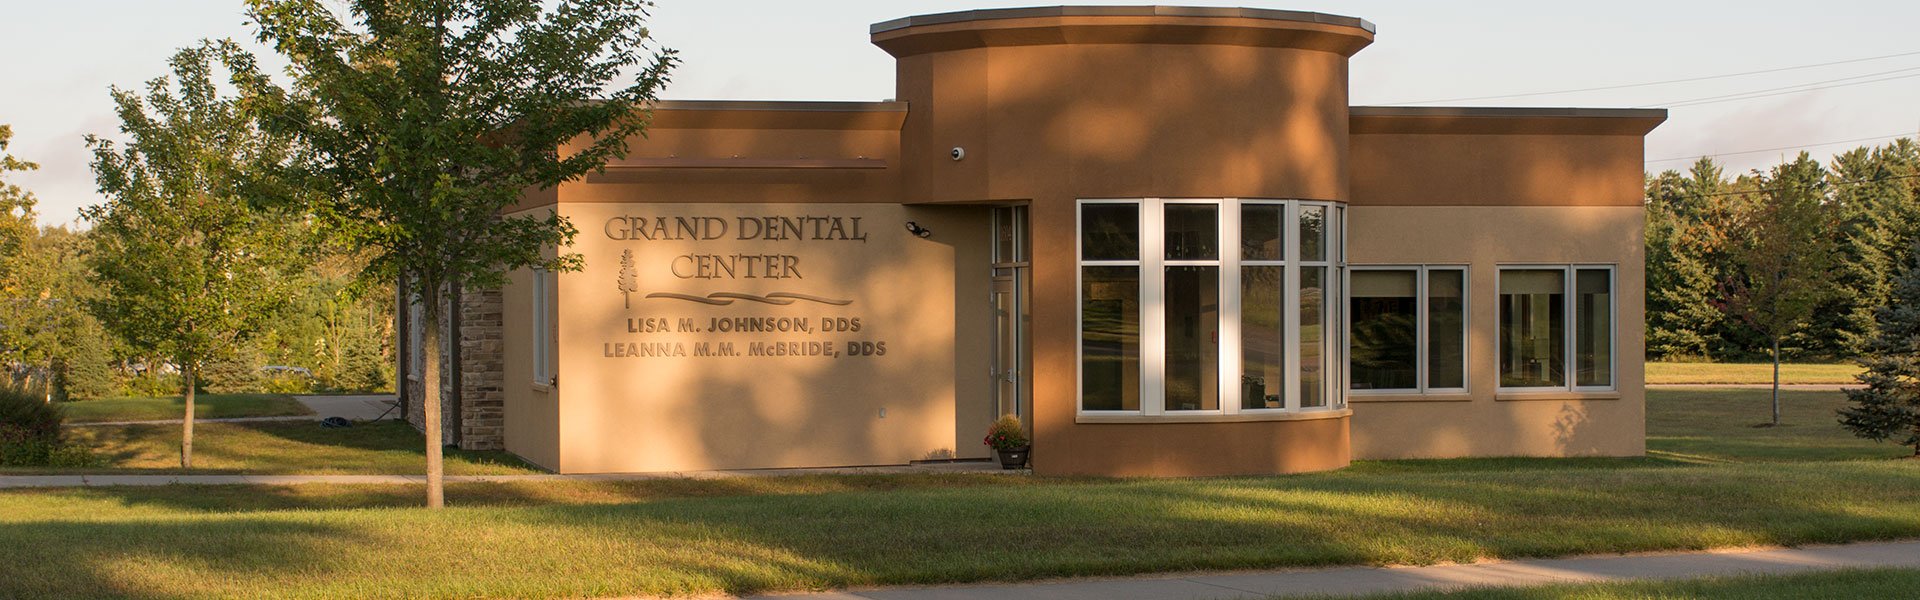 Grand Dental Center Office 